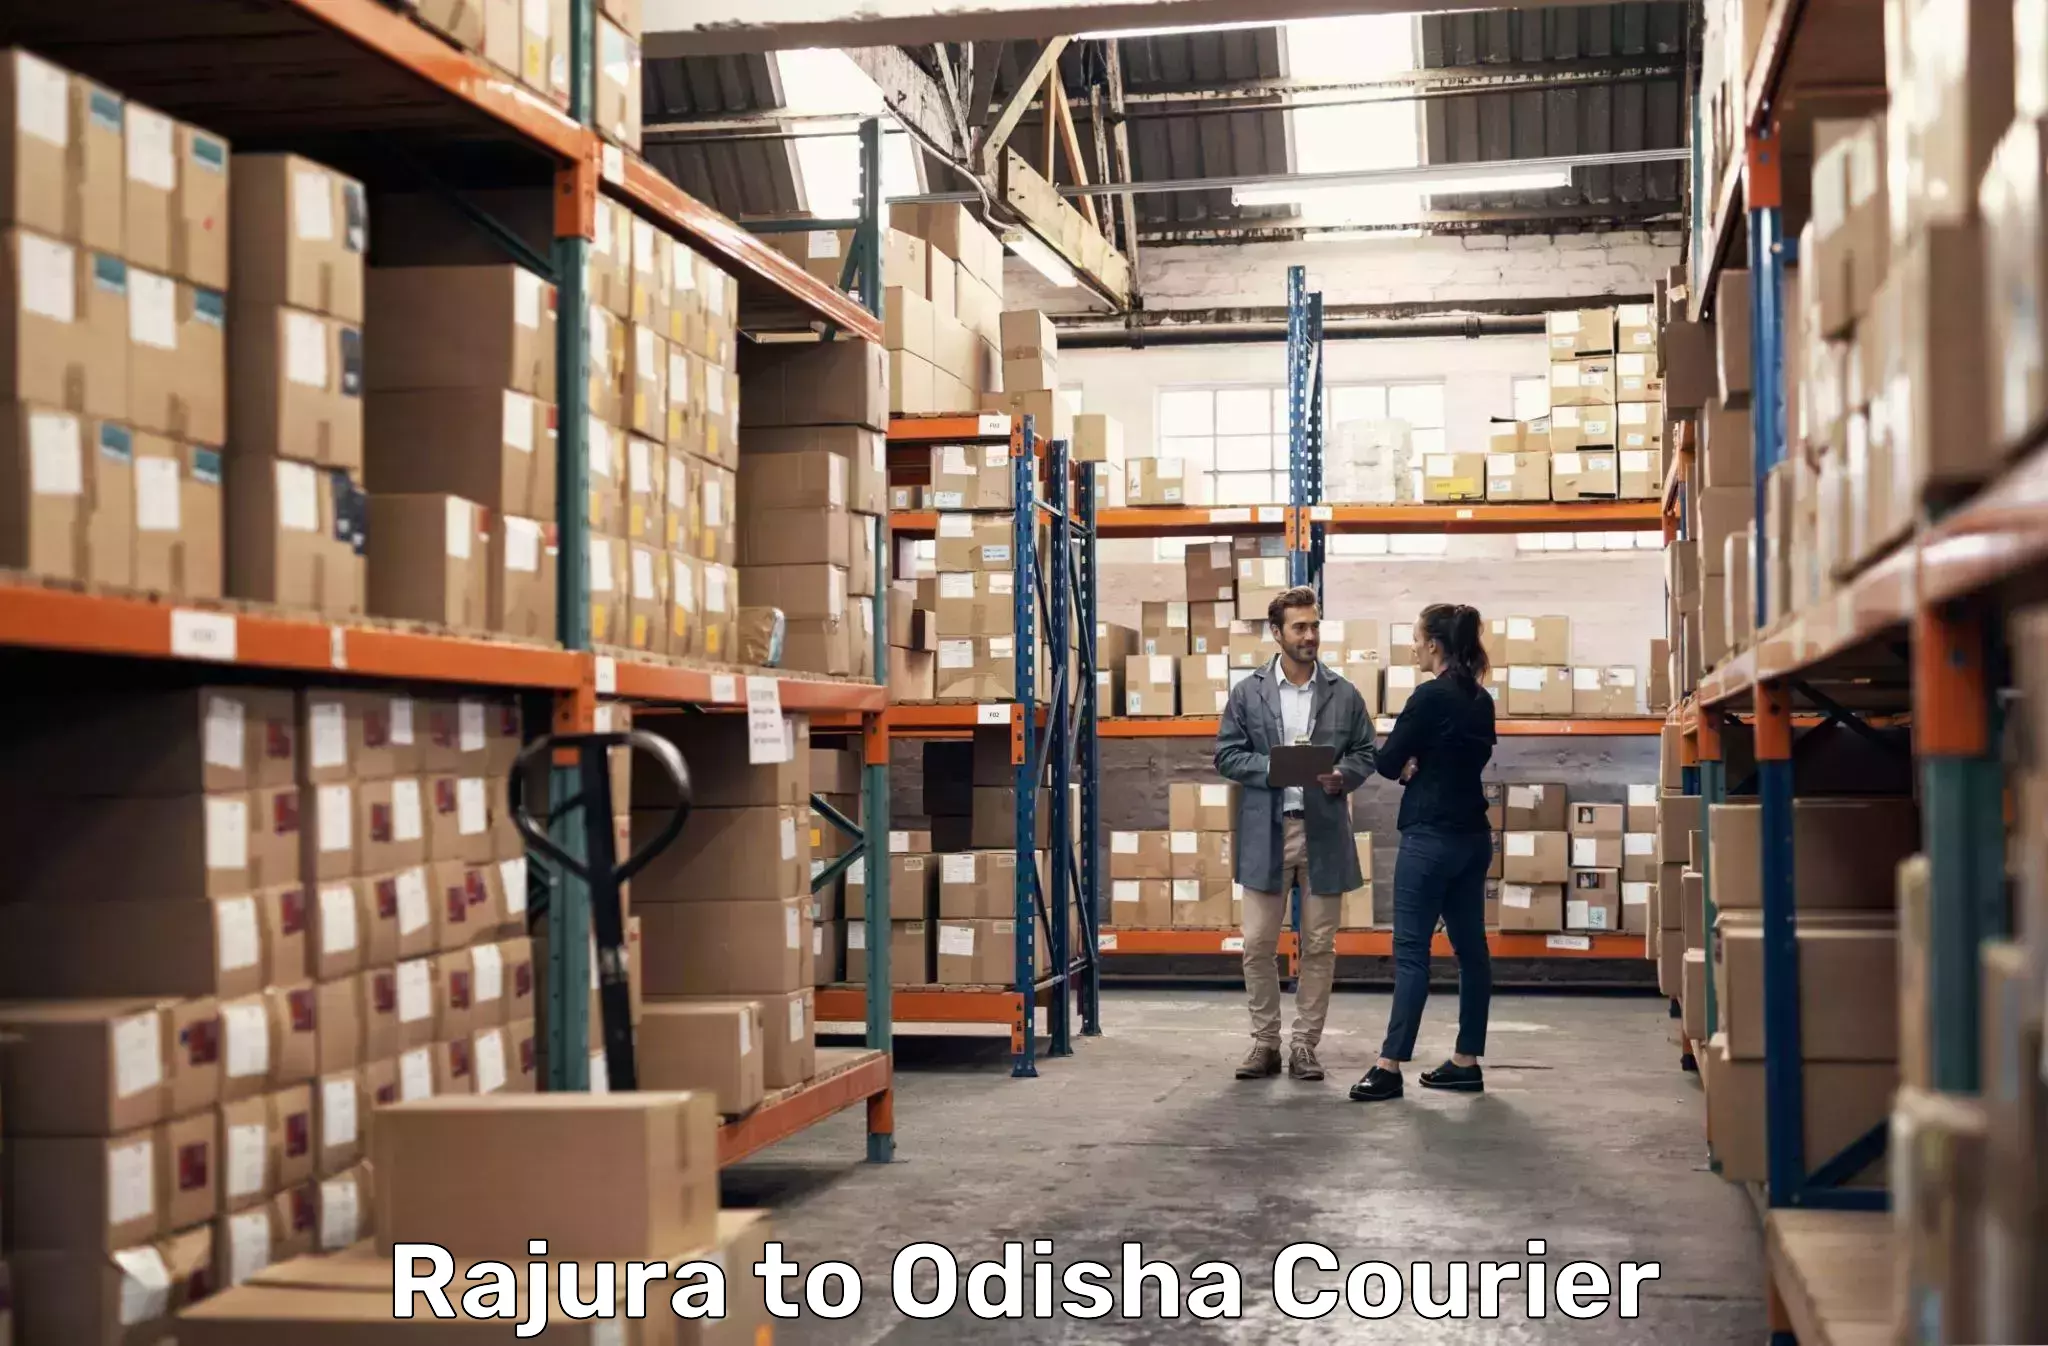 Local delivery service Rajura to Kishorenagar